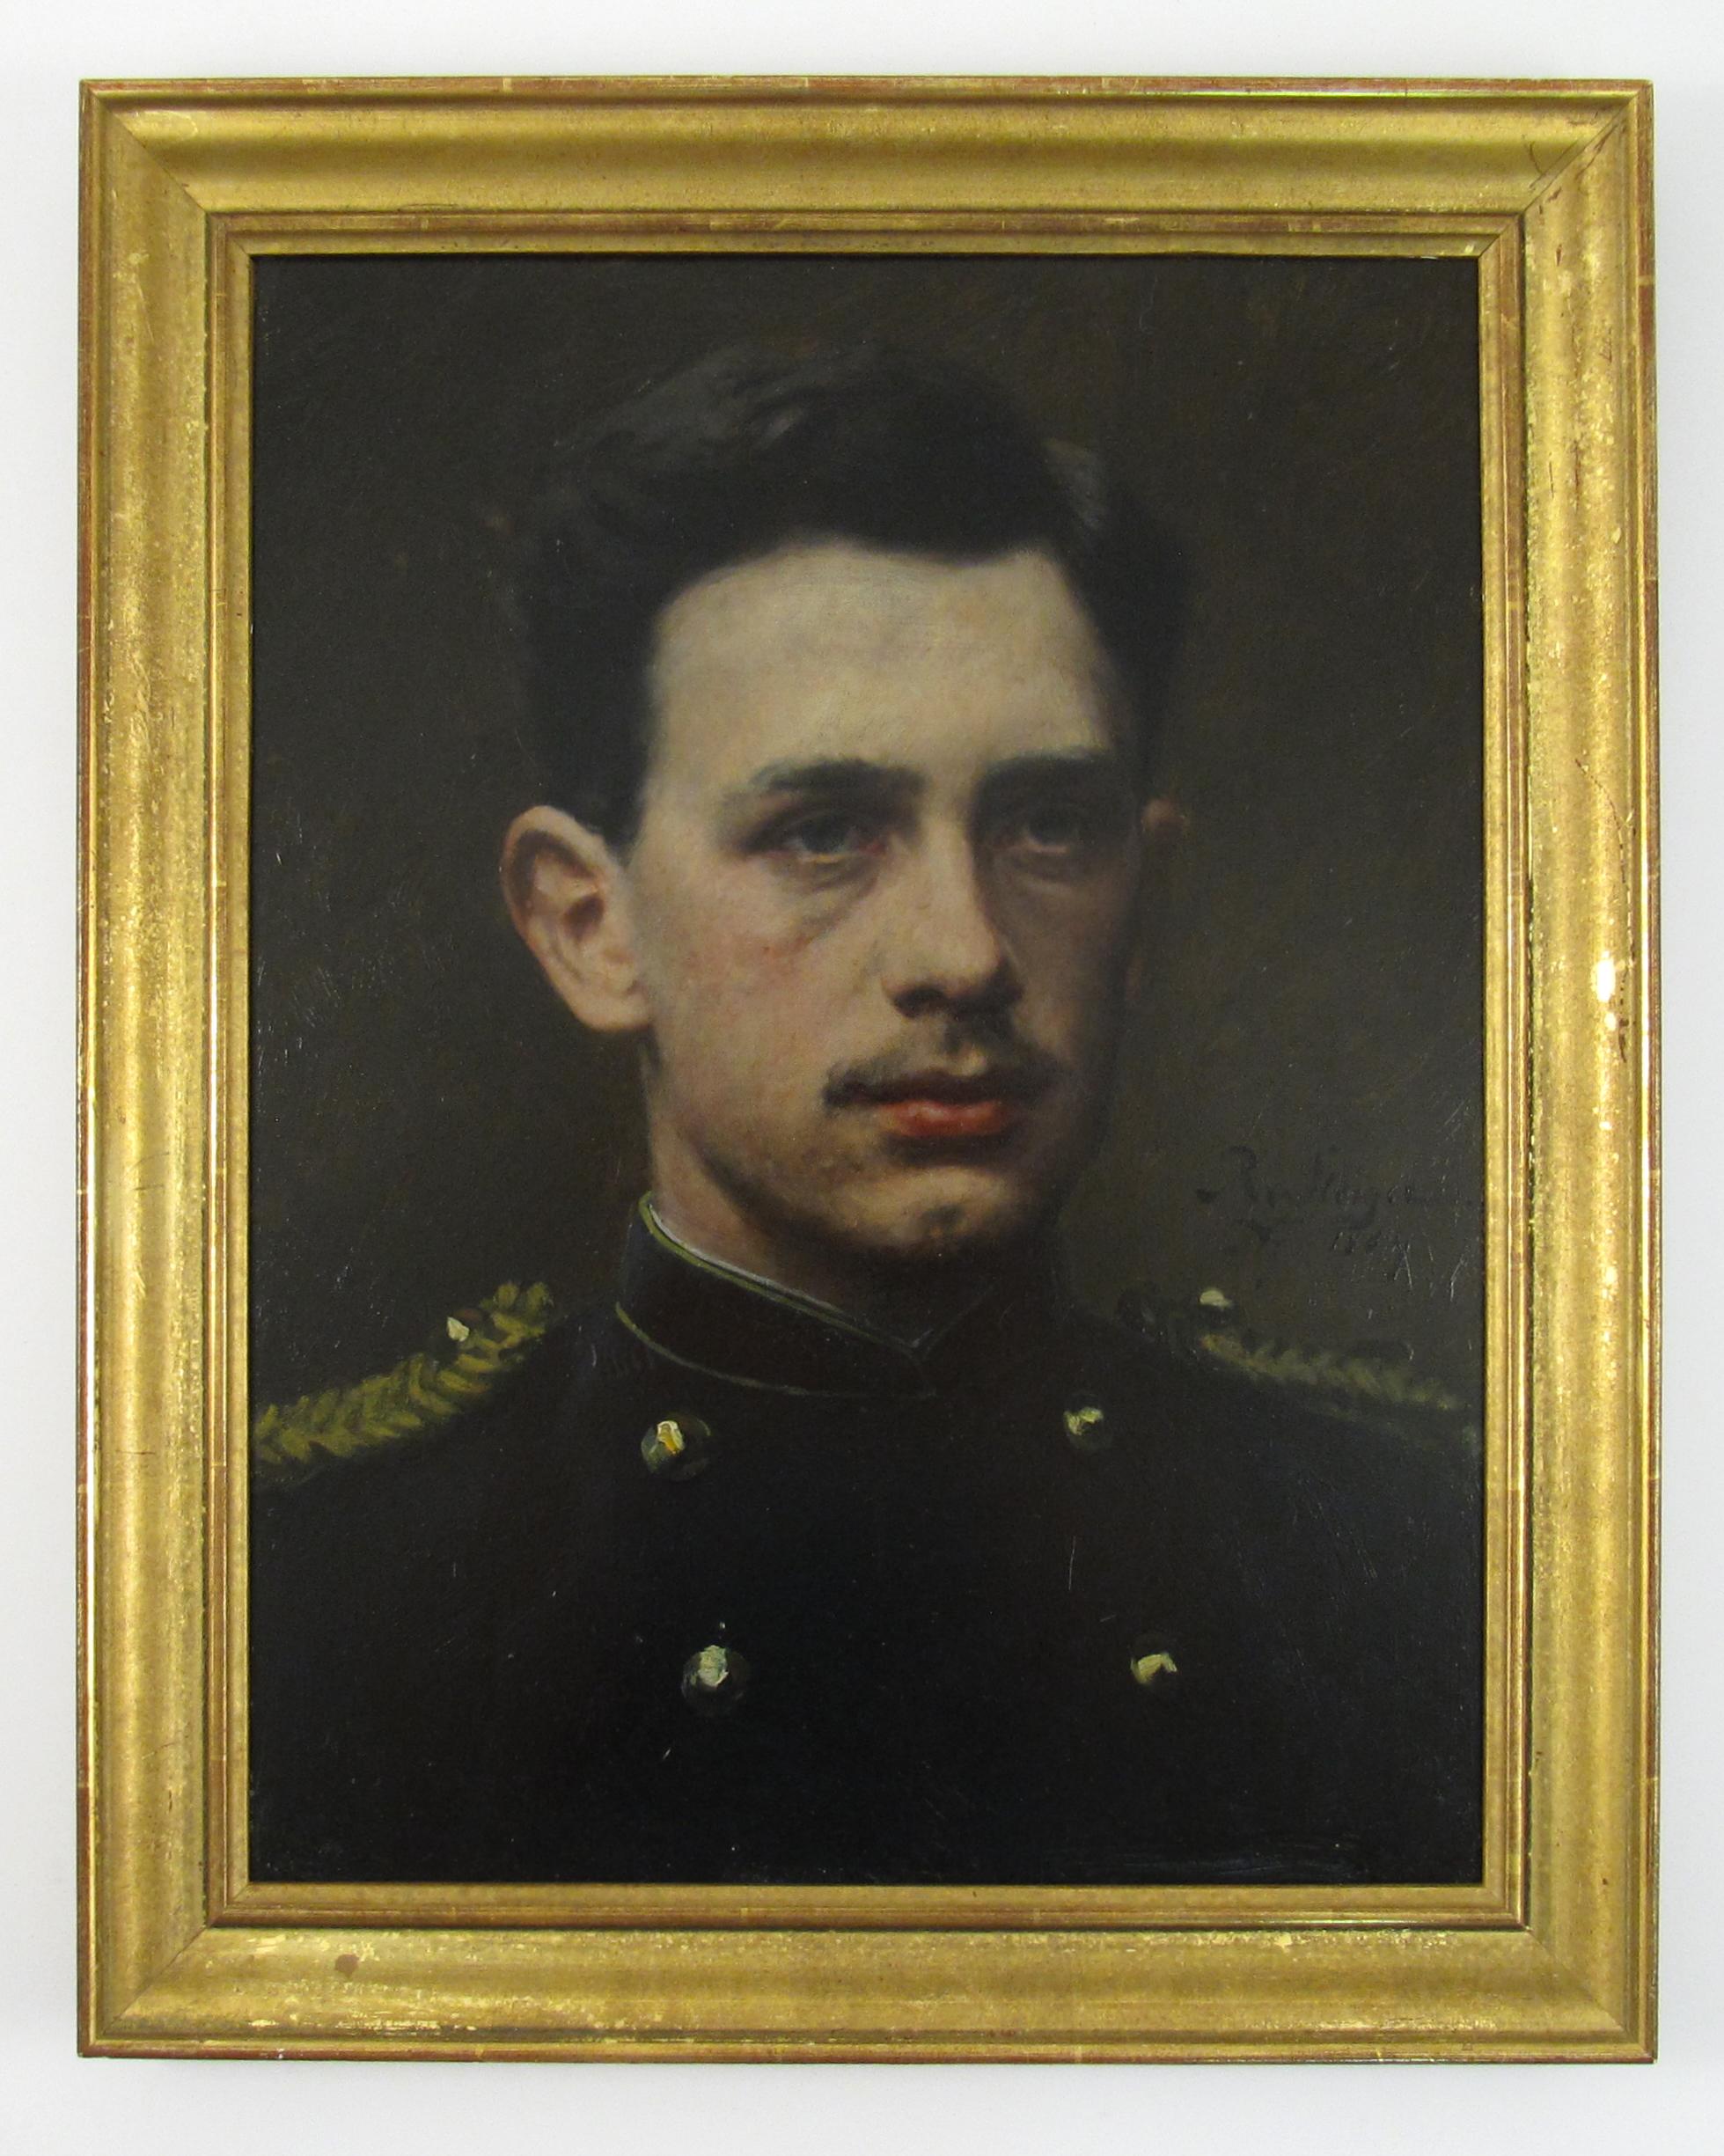 Robert von Steiger (1856-1941) Porträt des niederländischen Offiziers A. v. Steiger 1884 Holland – Painting von Johann Ludwig Robert von Steiger